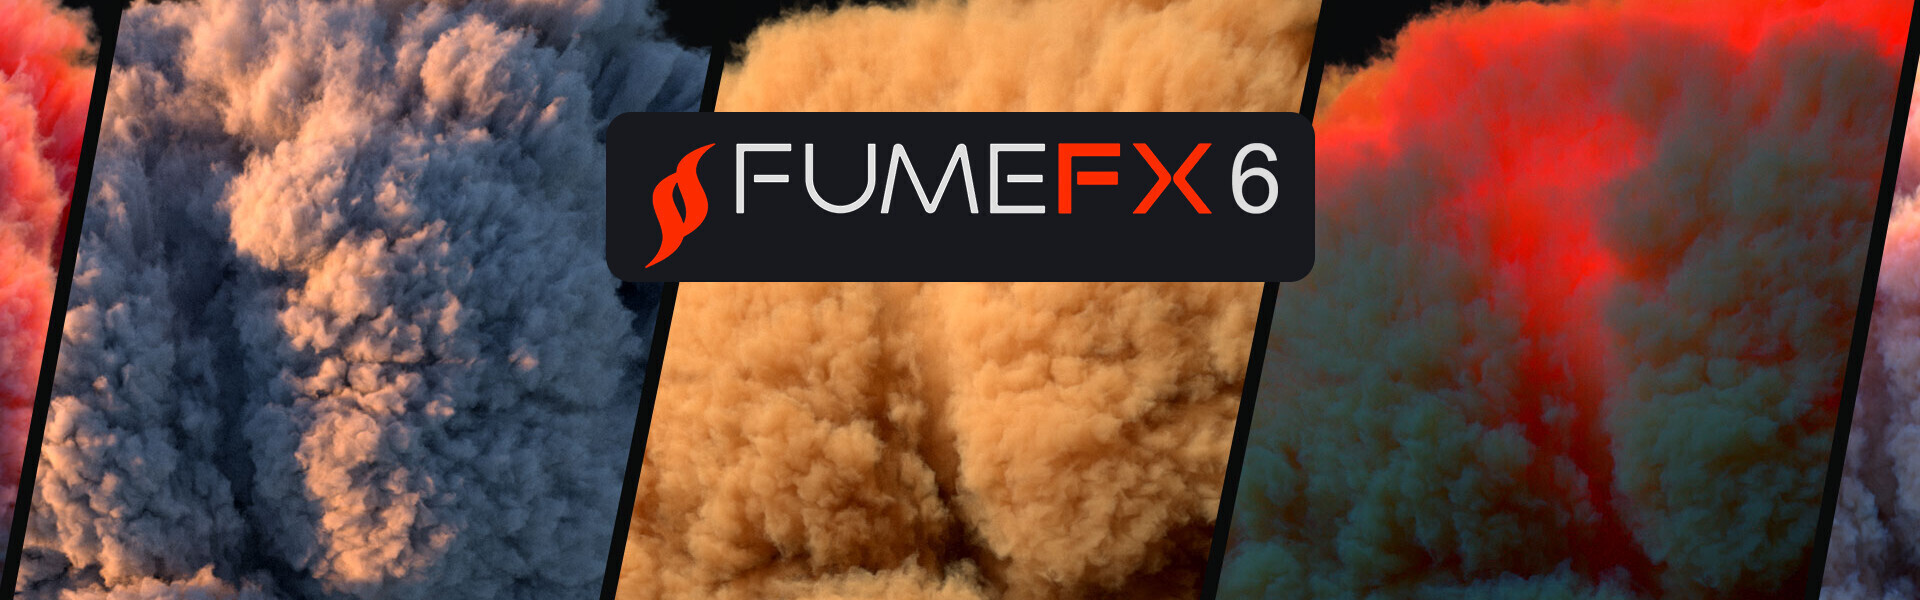 پلاگین FumeFX 6.0 نسخه Beta منتشر شد